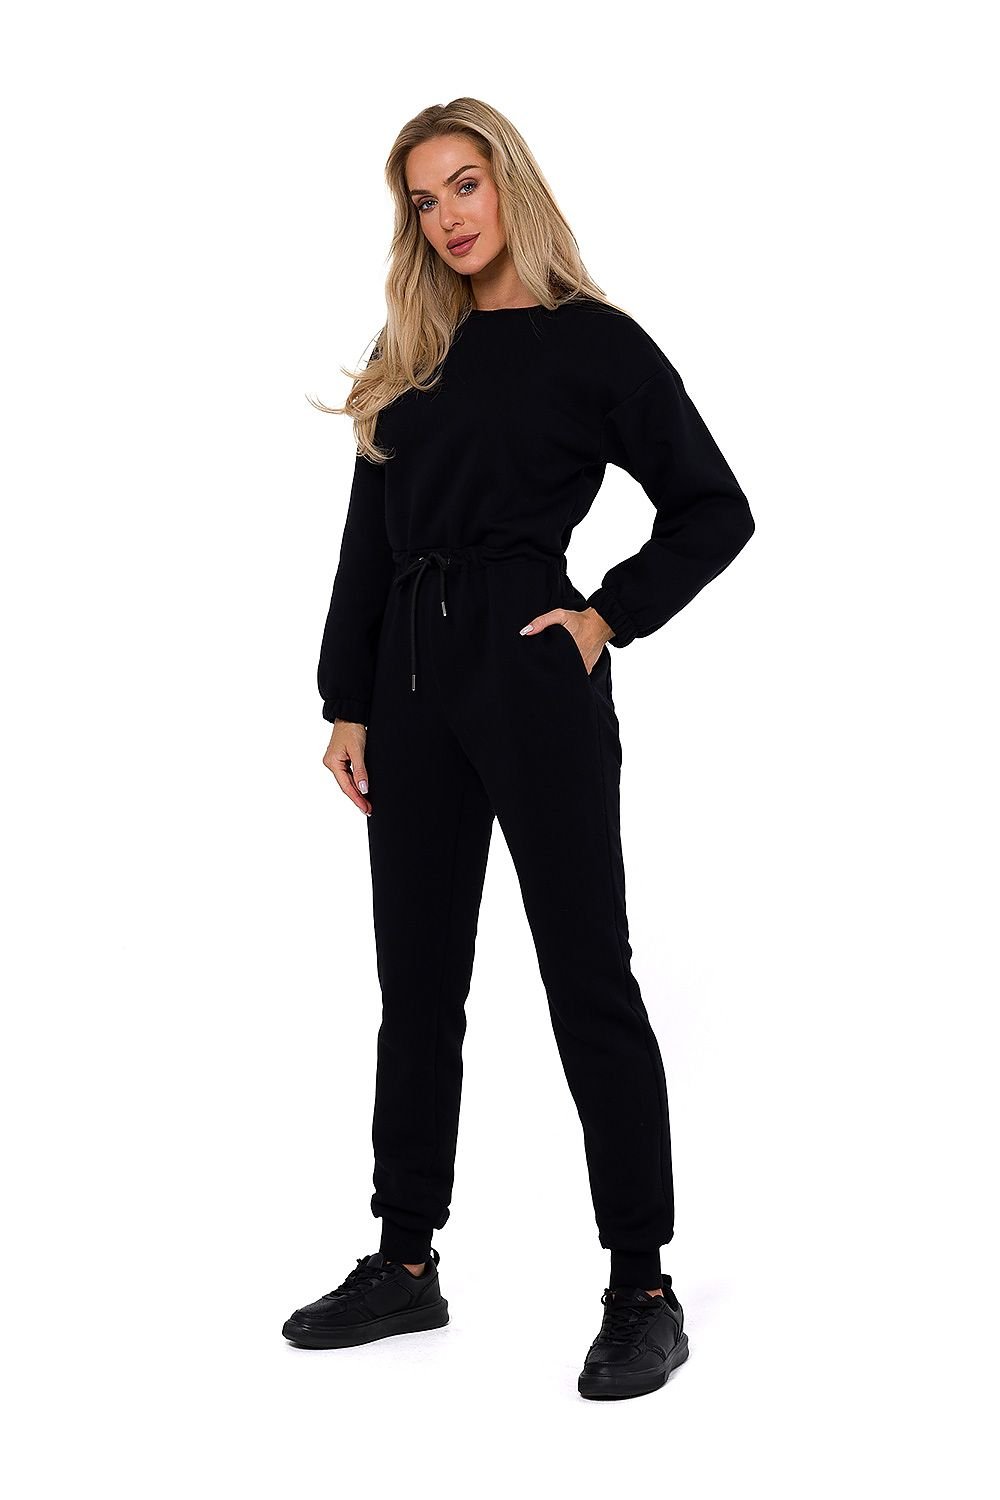 TEEK - Drawstring Waist Sweatsuit Jumpsuit SET TEEK MH black L 